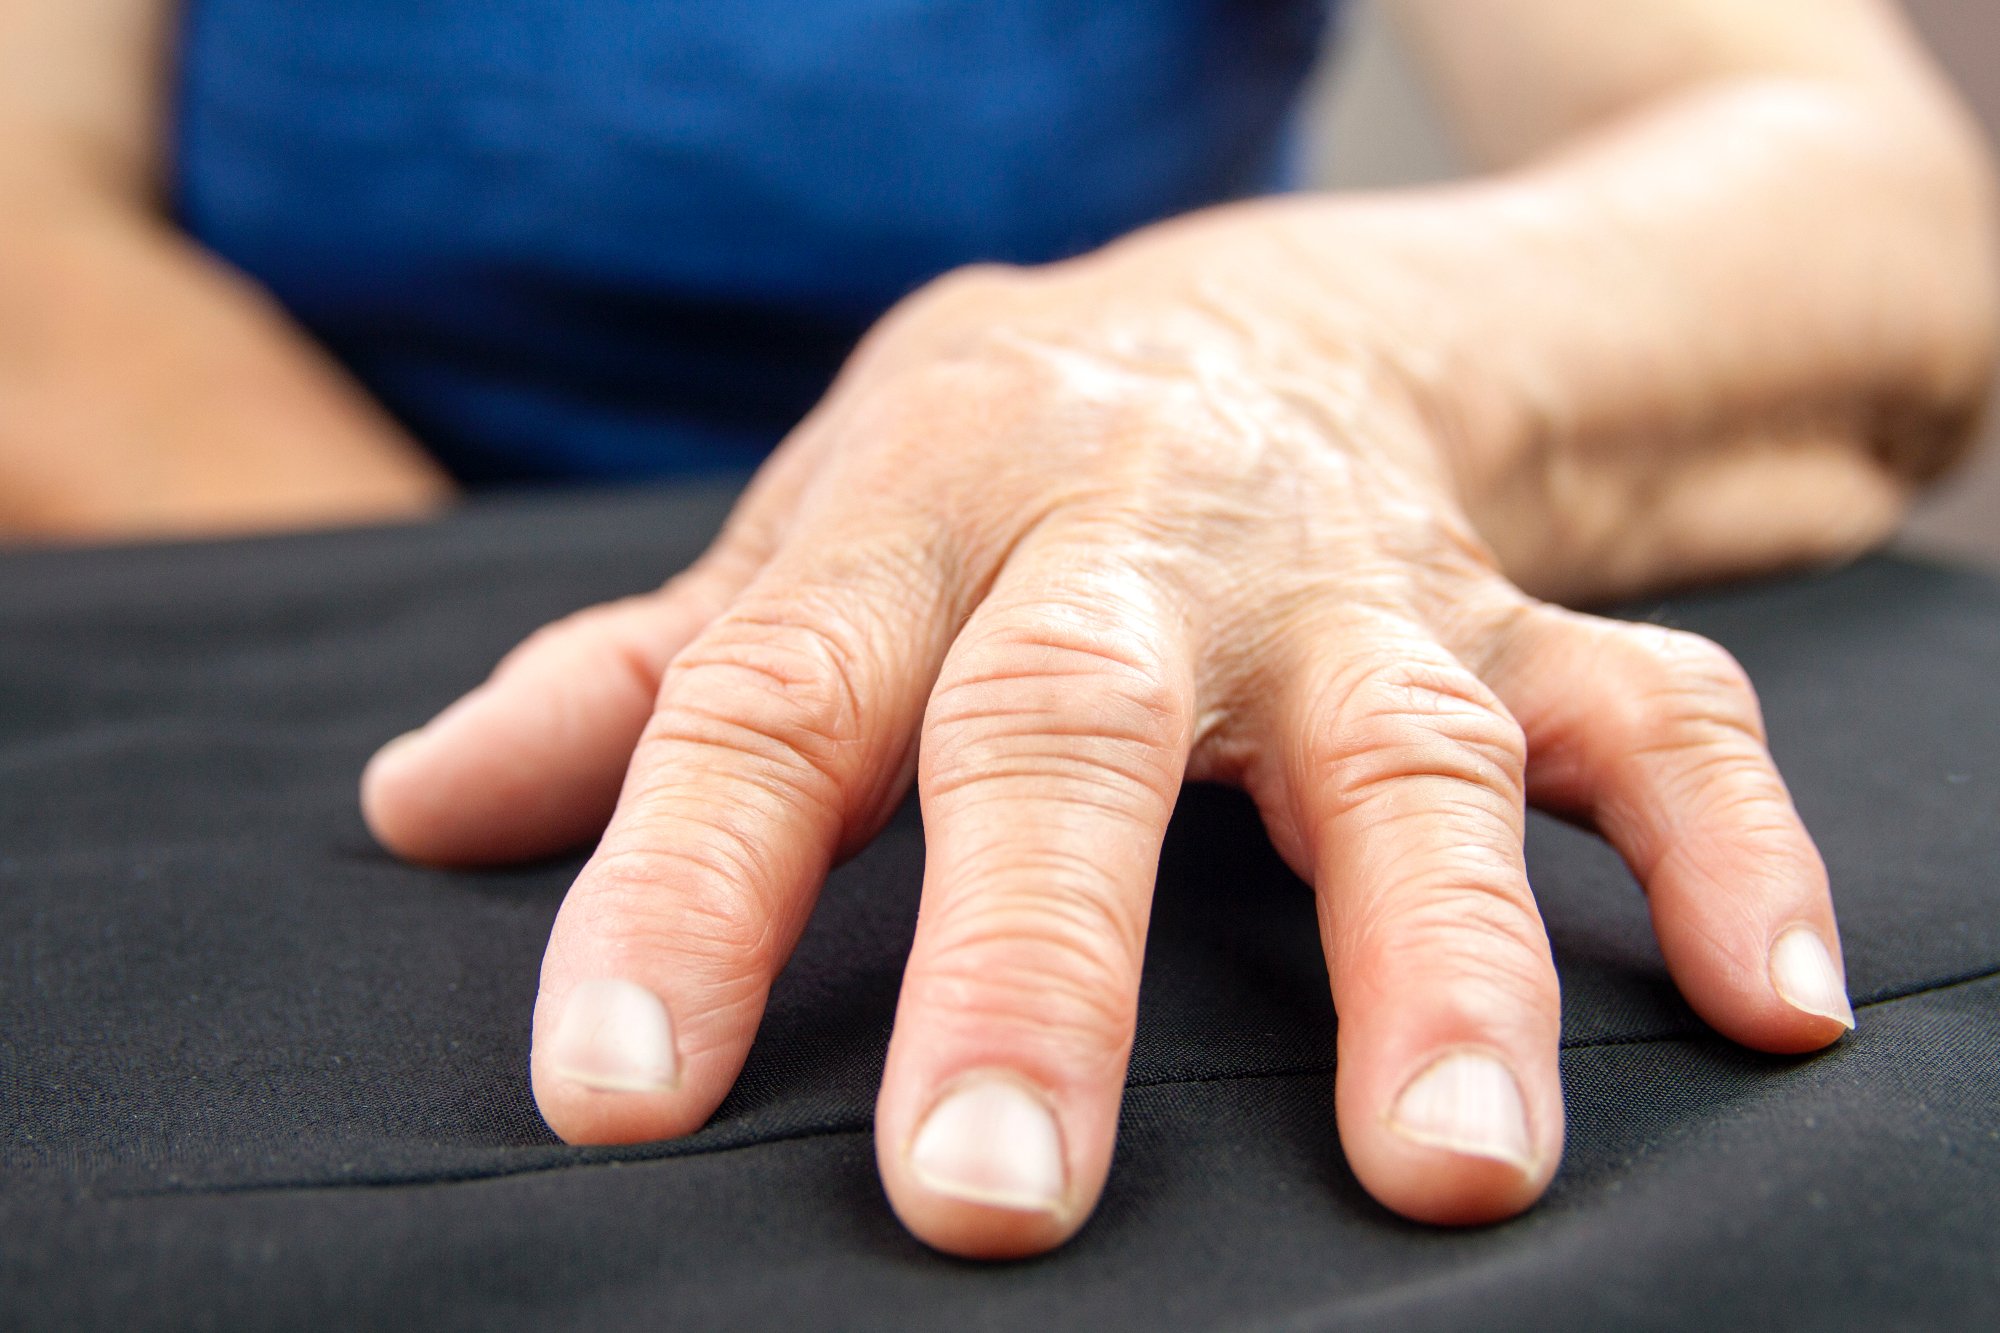 Revmatoidni artritis ti lahko pomaga pri izboljšanju načina življenja